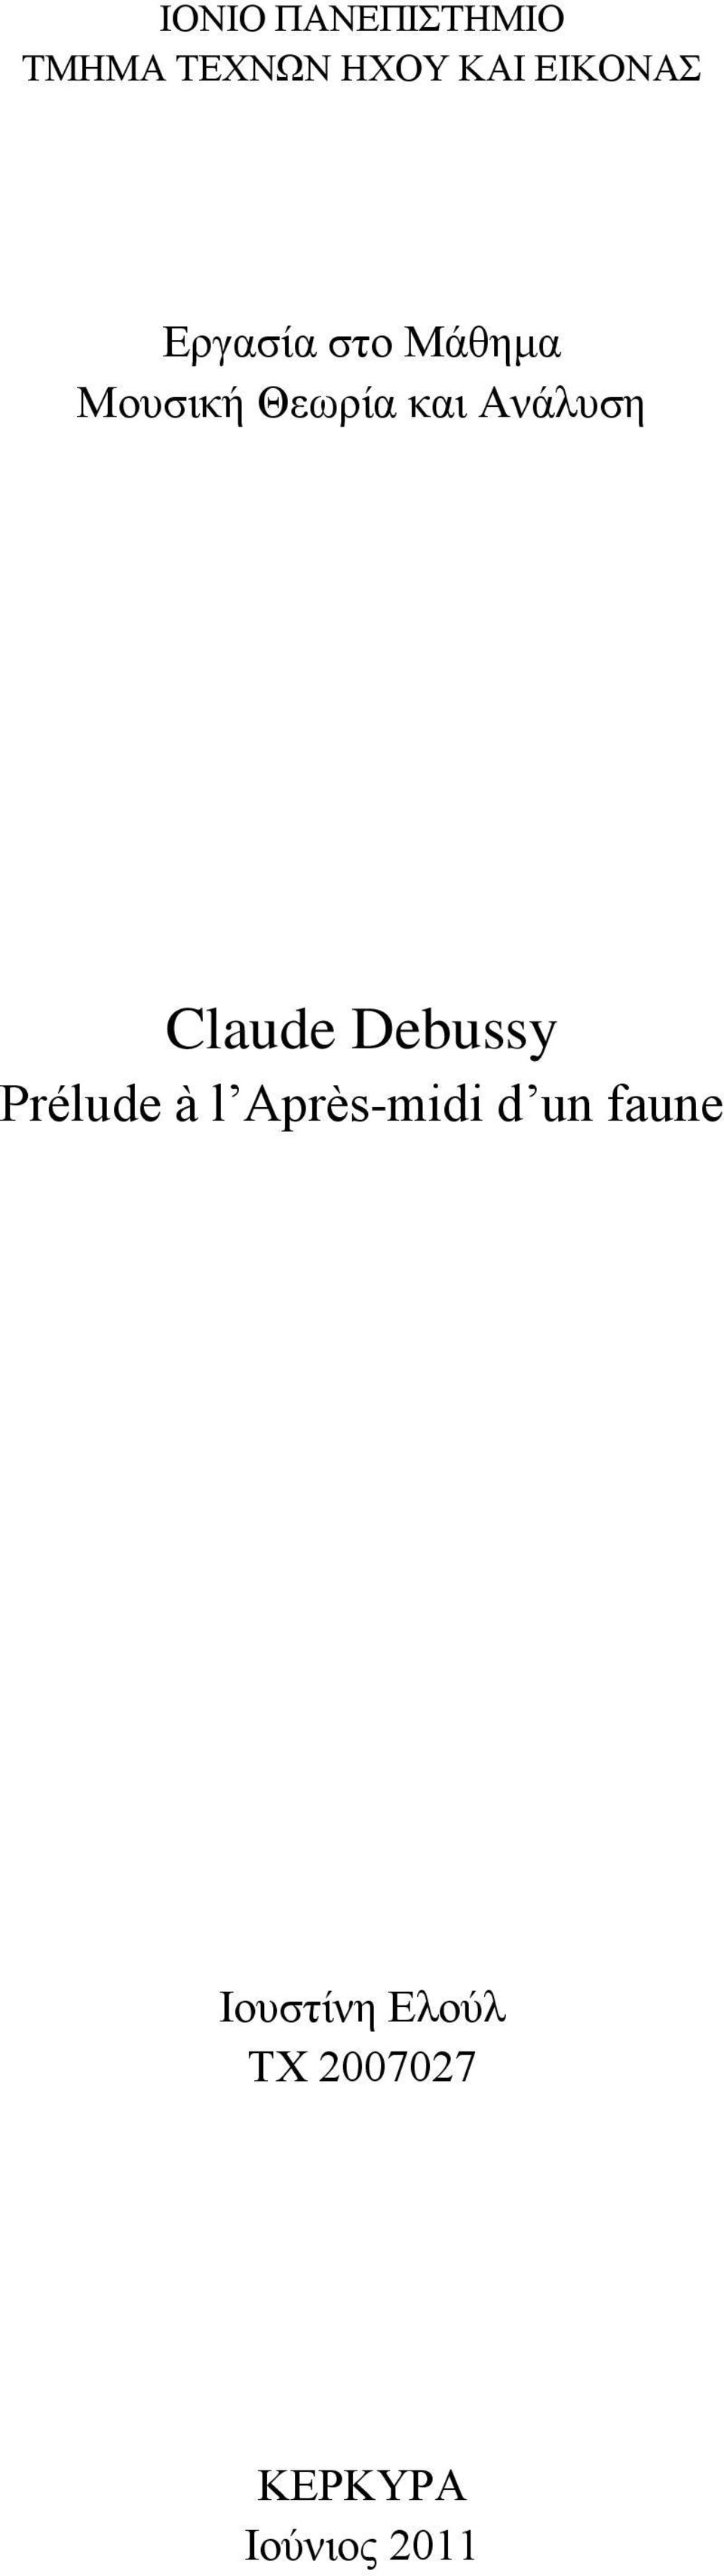 Ανάλυση Claude Debussy Prélude à l Après-midi d